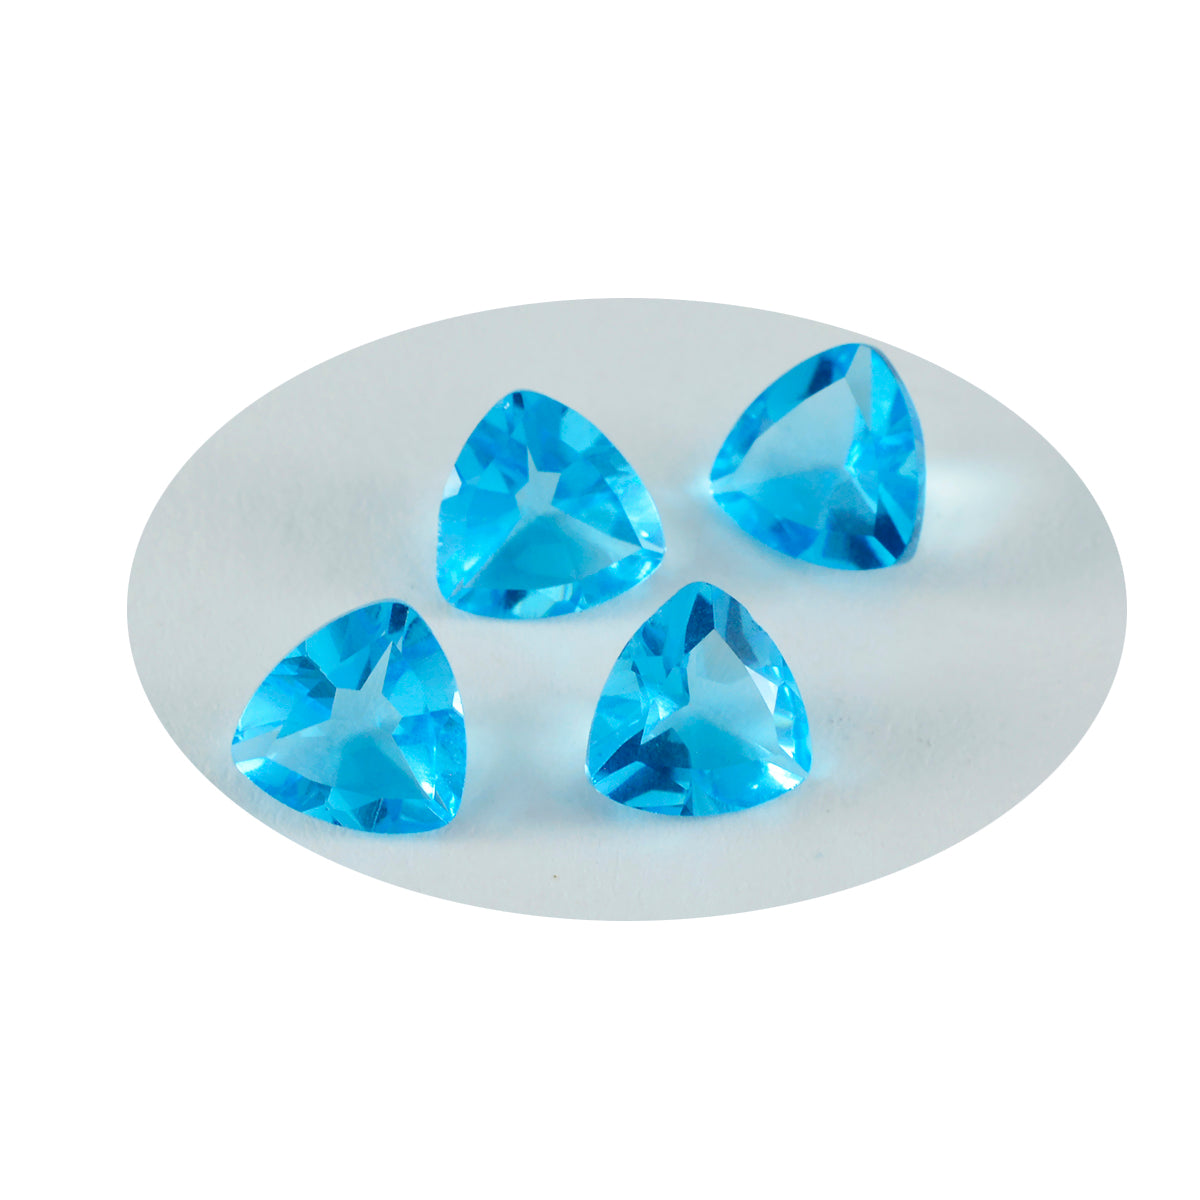 riyogems 1 шт. синий топаз cz граненый 13x13 мм форма триллион милый качественный свободный драгоценный камень